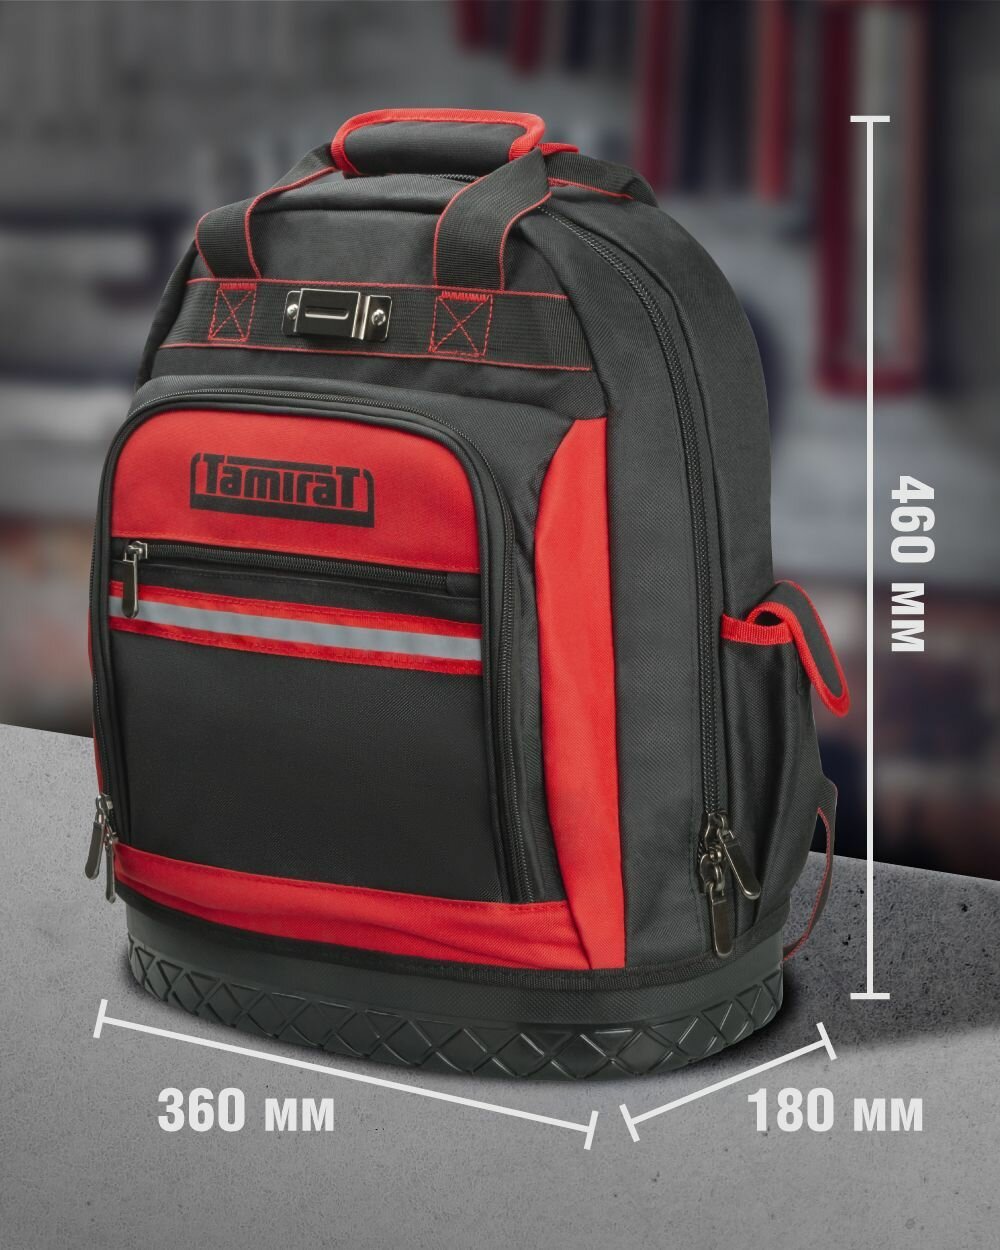 Рюкзак Tamirat 91 250 TTTA-Bag05 (жесткое резиновое дно, 360*180*460 мм)